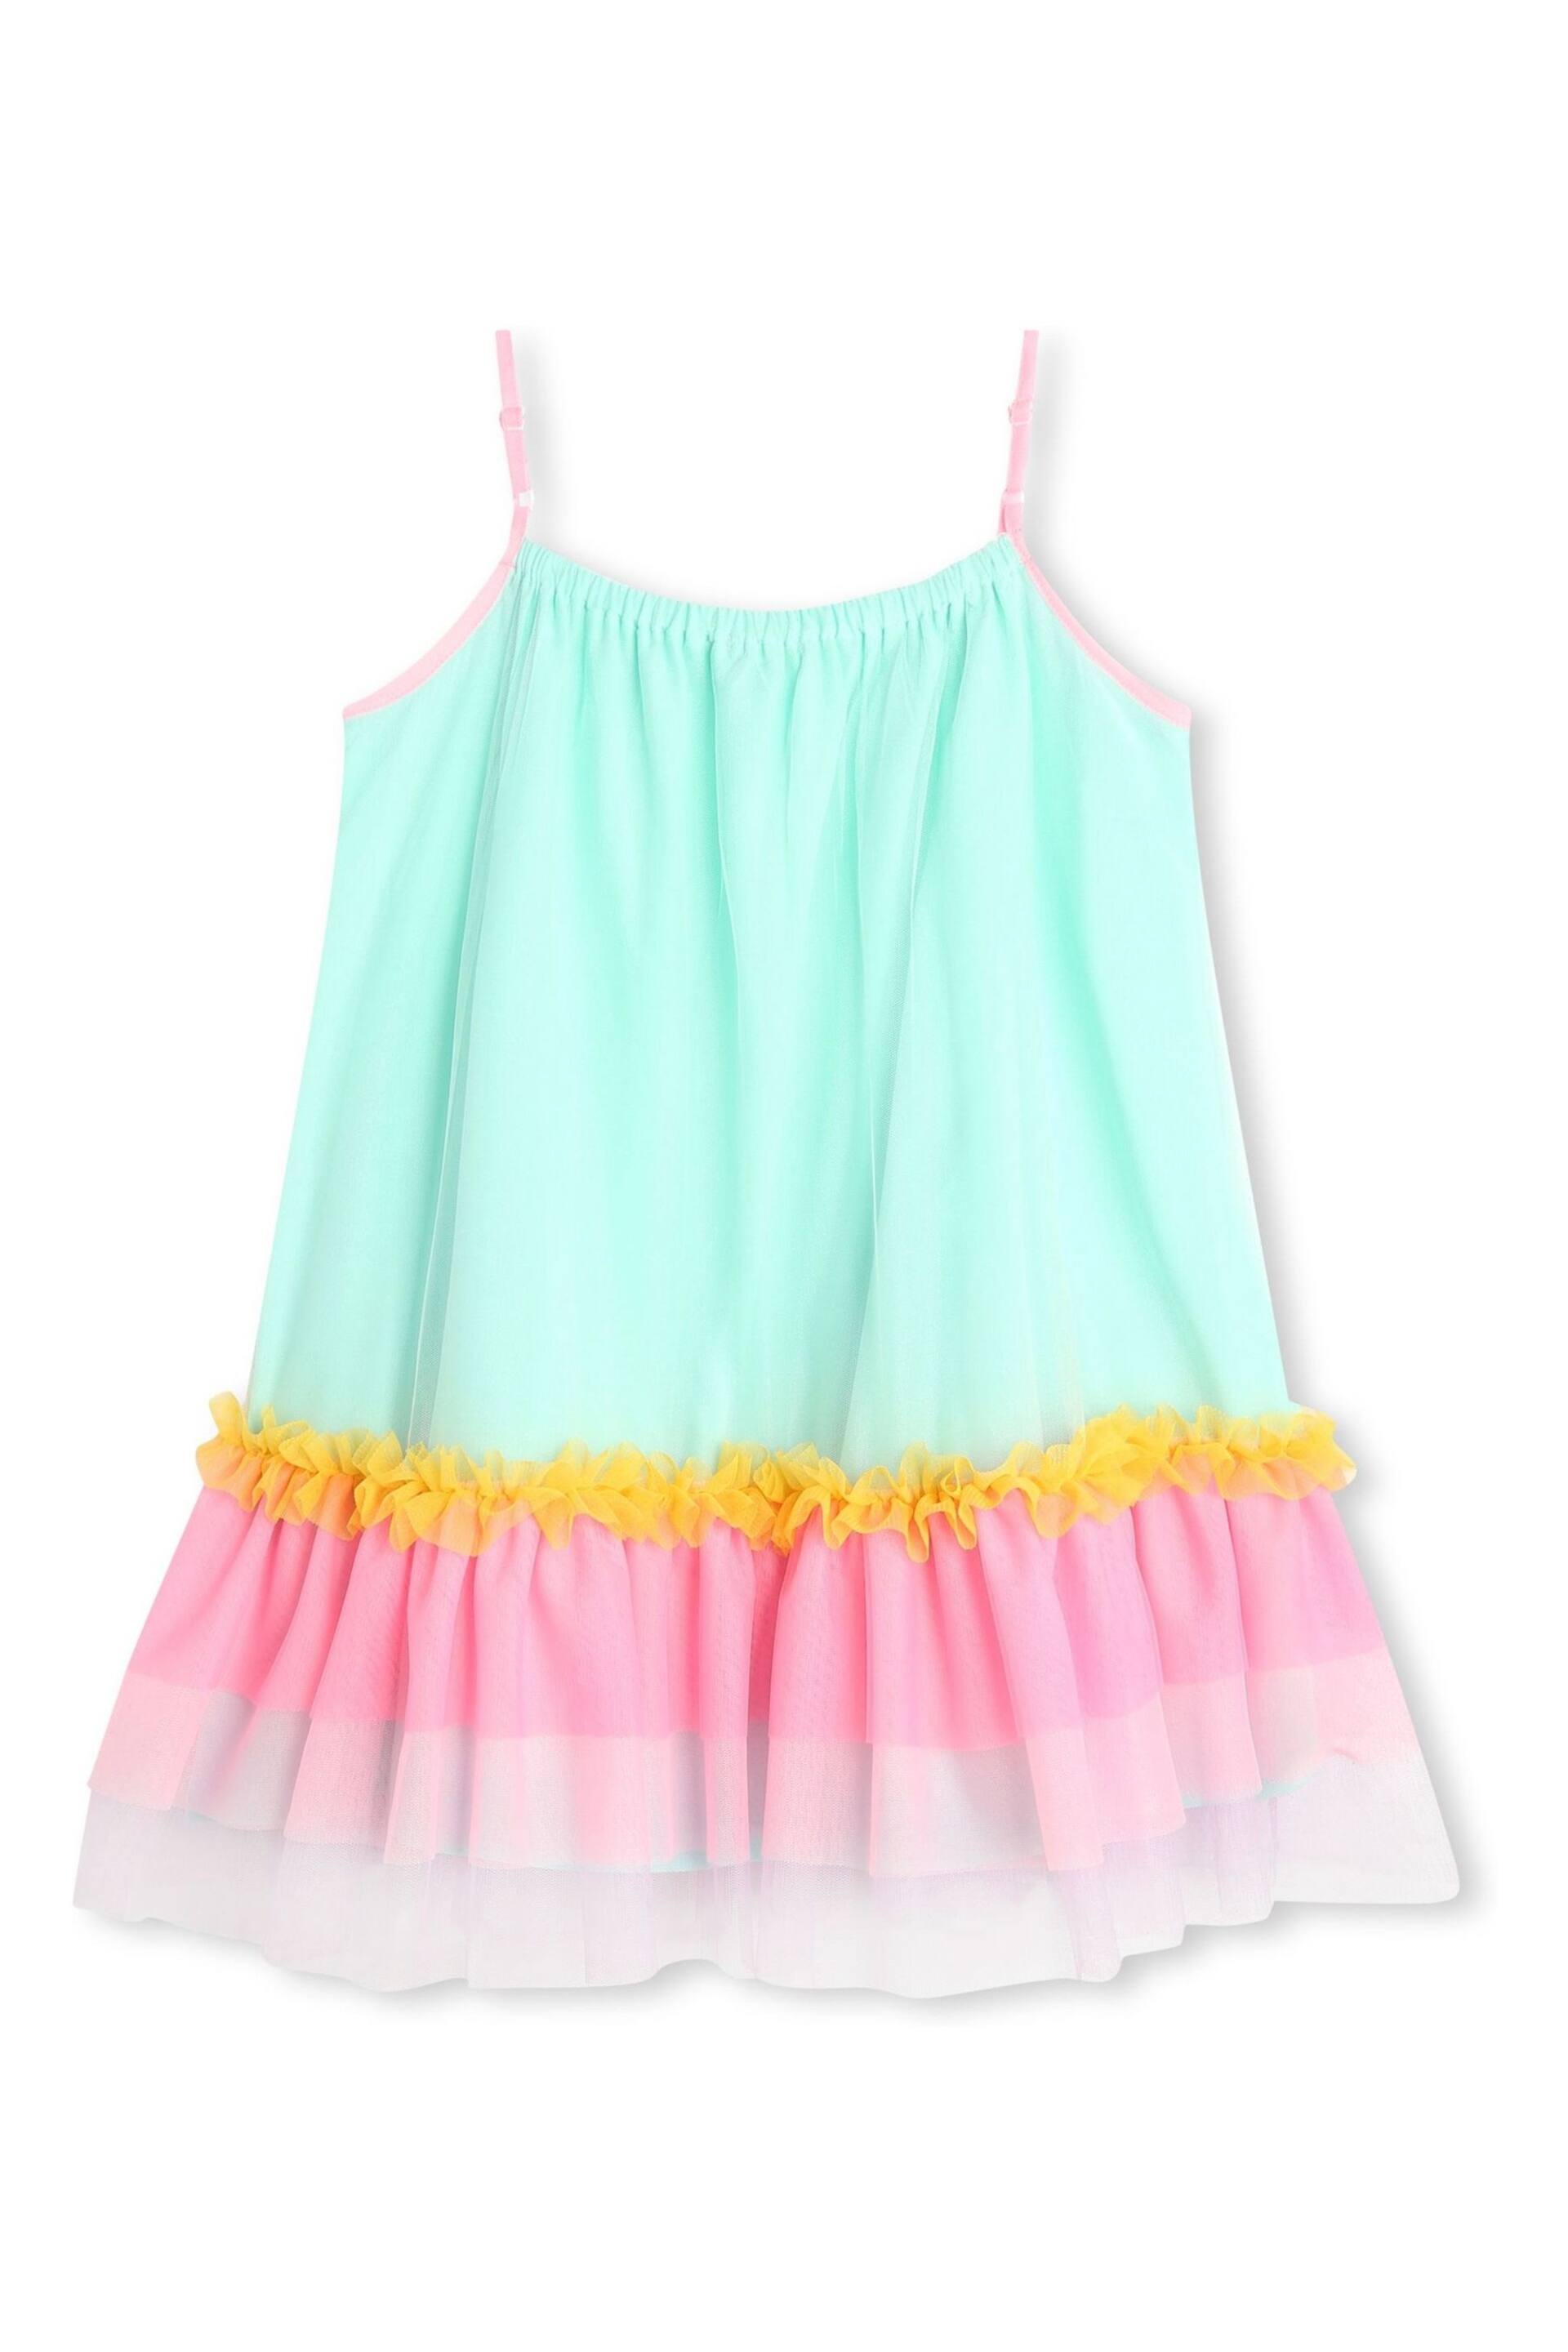 Billieblush Green Sleeveless Dress With Rainbow Mesh Tutu - Image 5 of 5